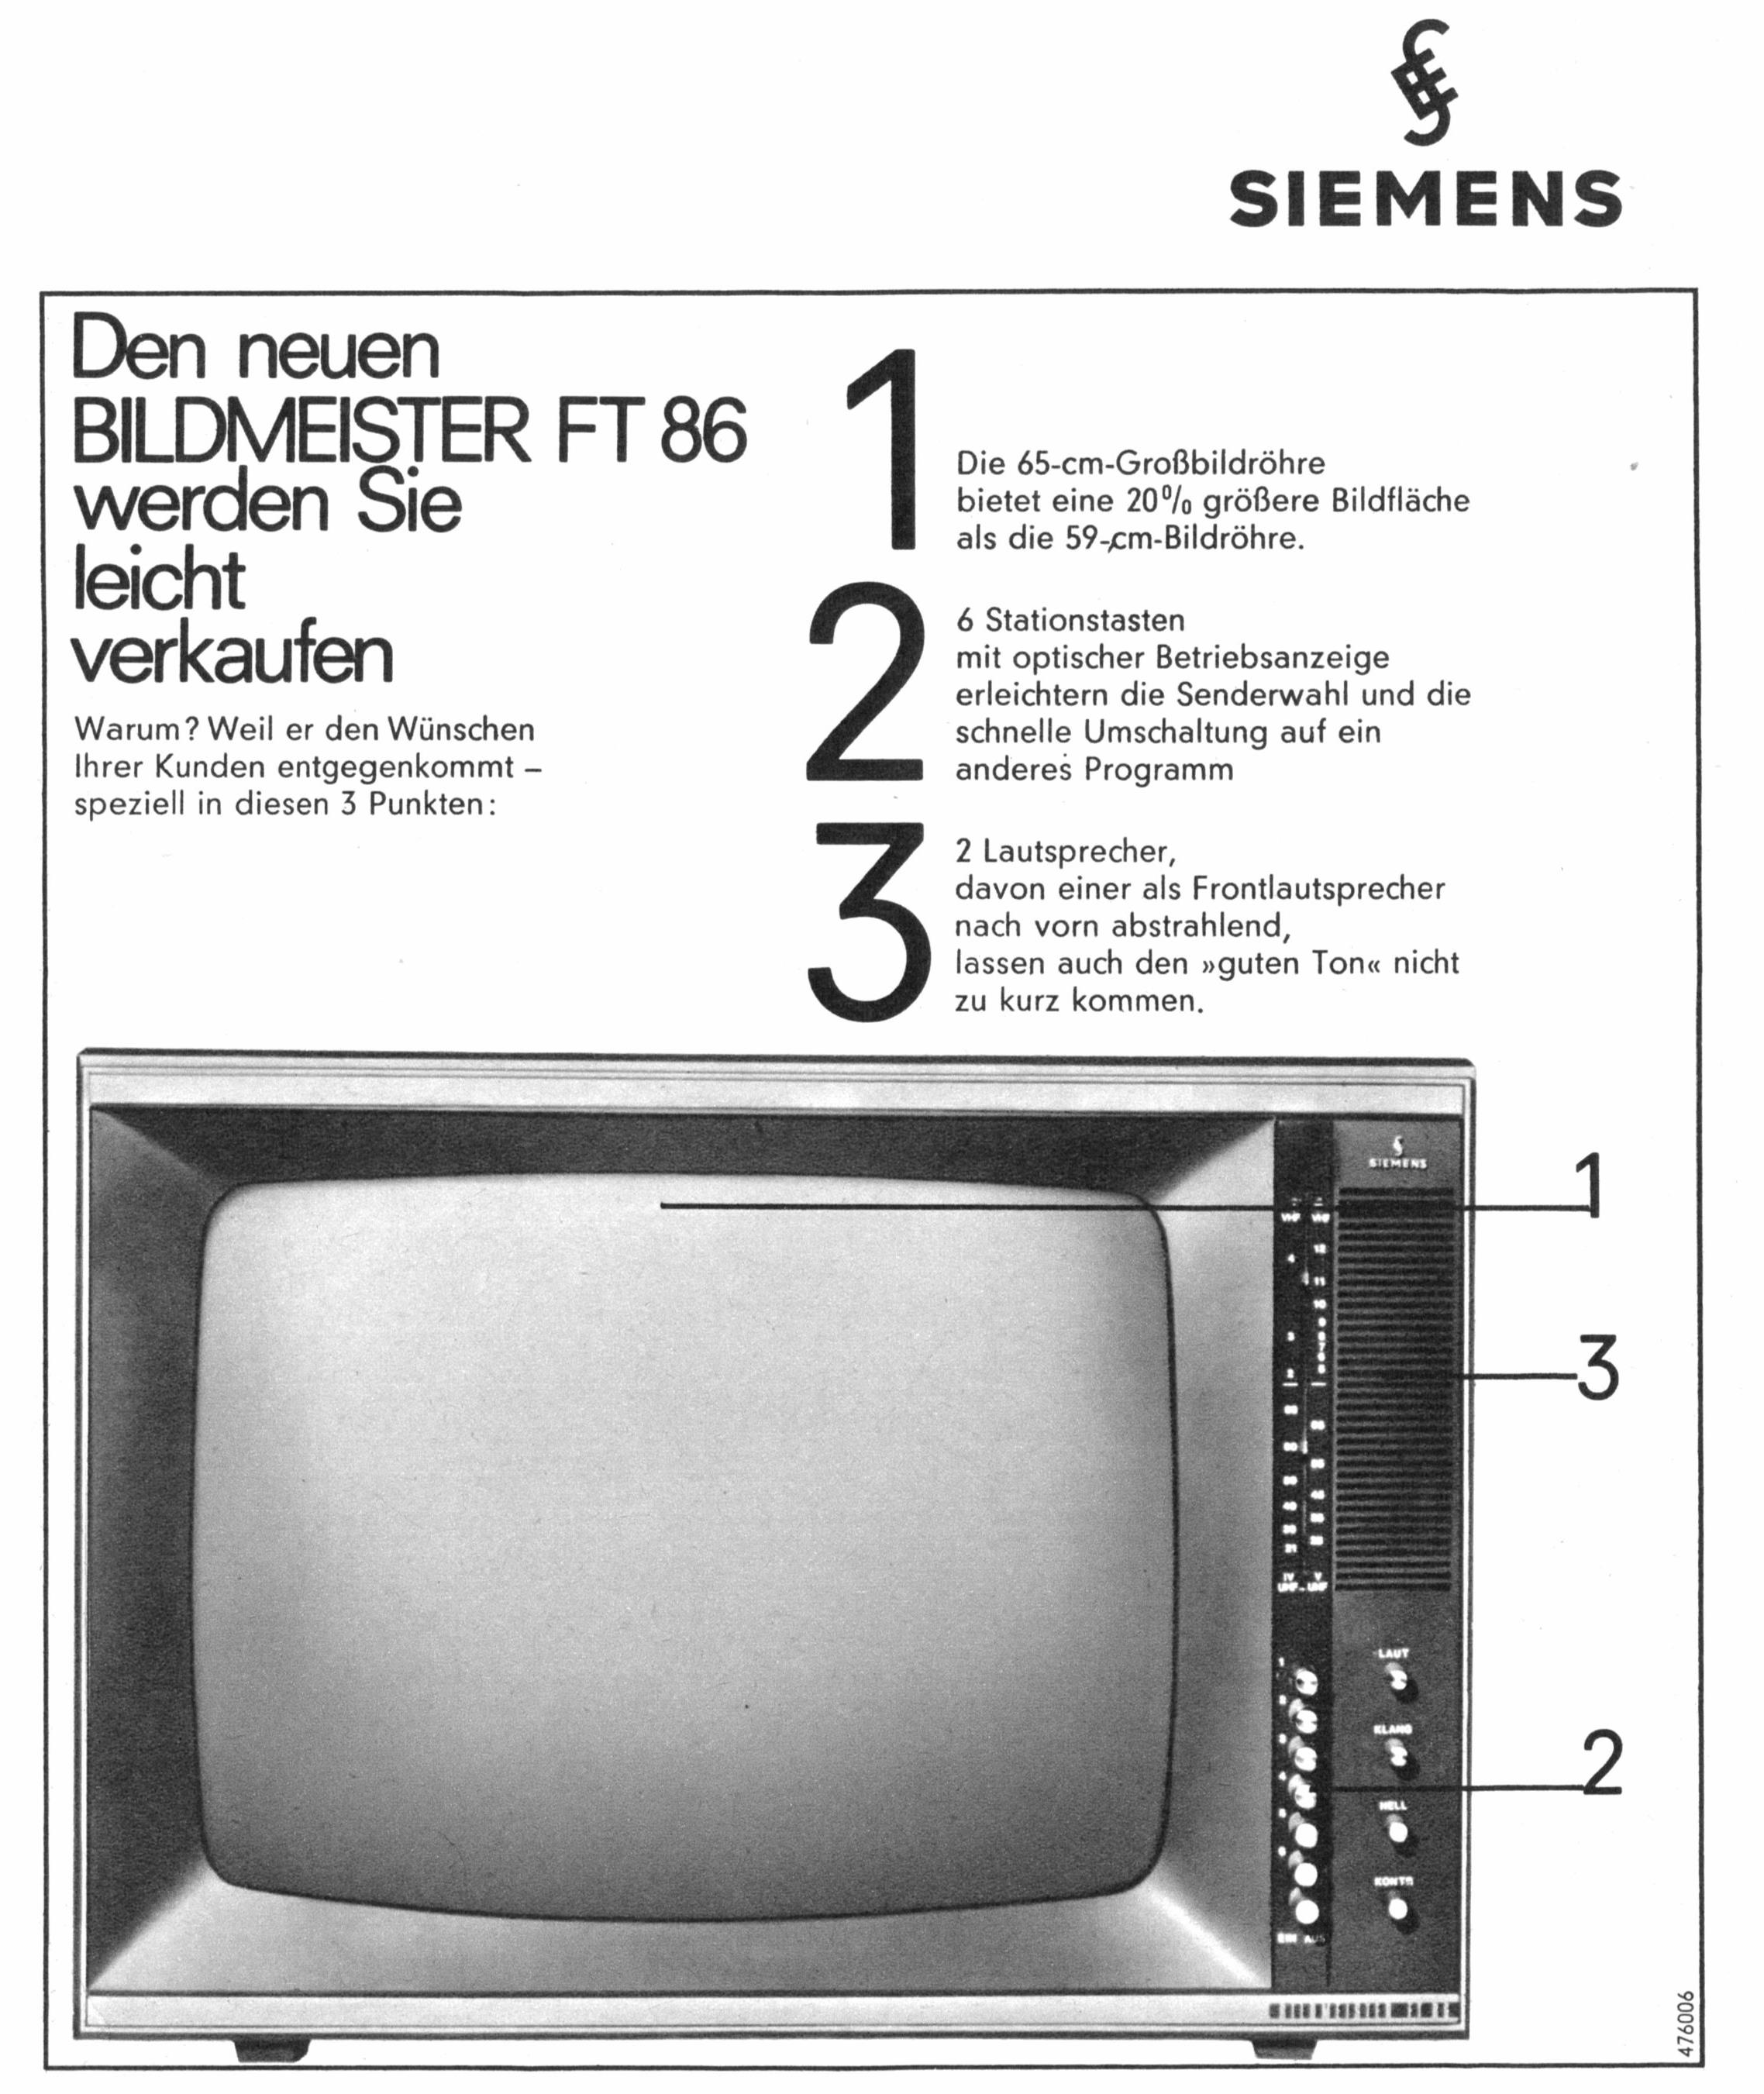 Siemens 1966 02.jpg